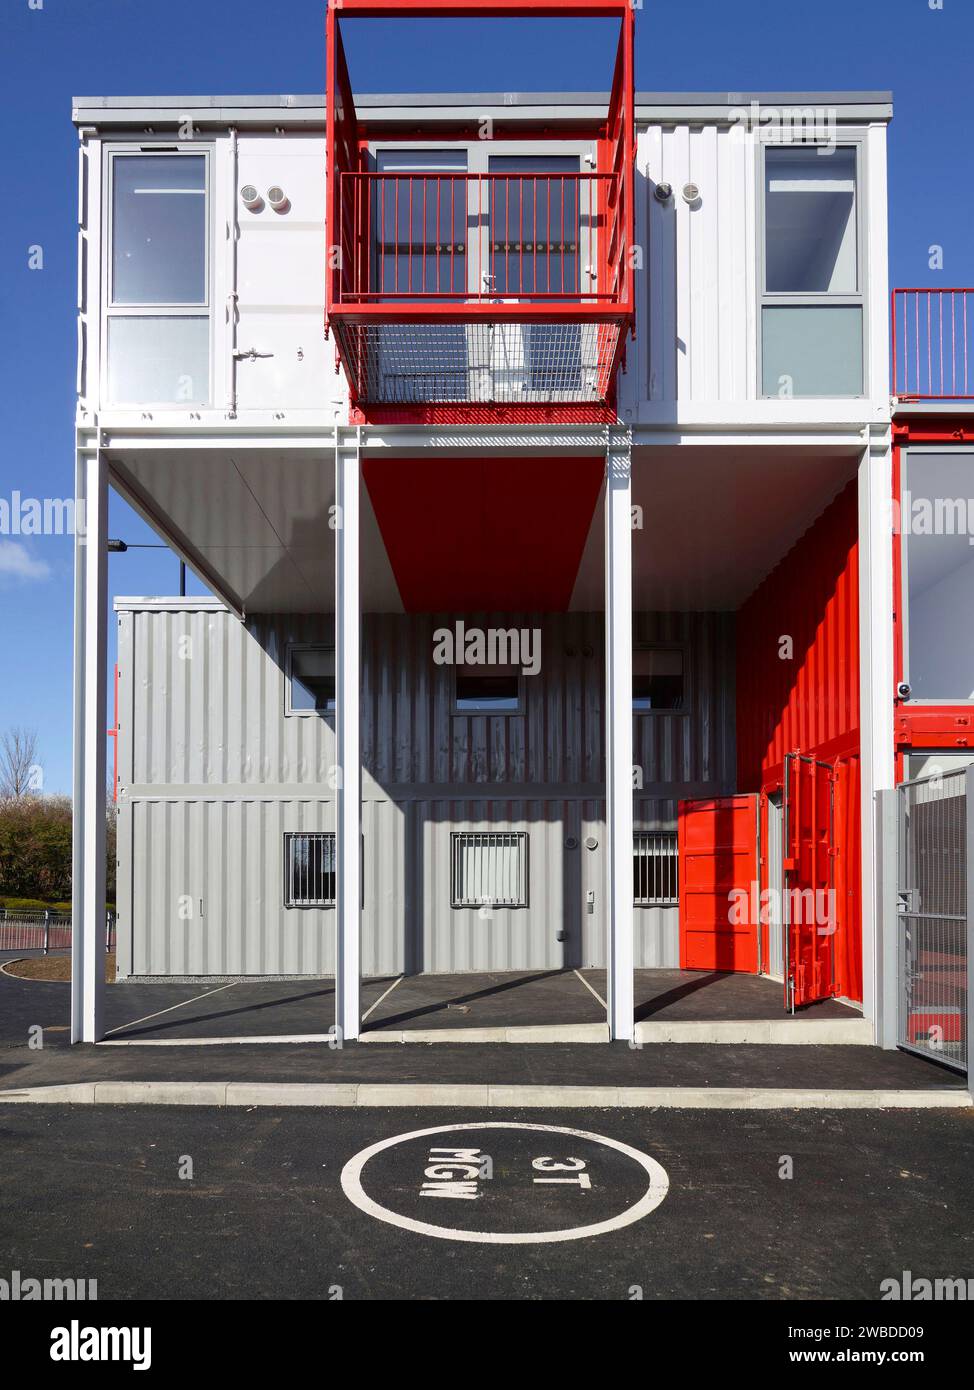 Edificio creato da container usati, Sunderland, Inghilterra nord-orientale, Regno Unito Foto Stock